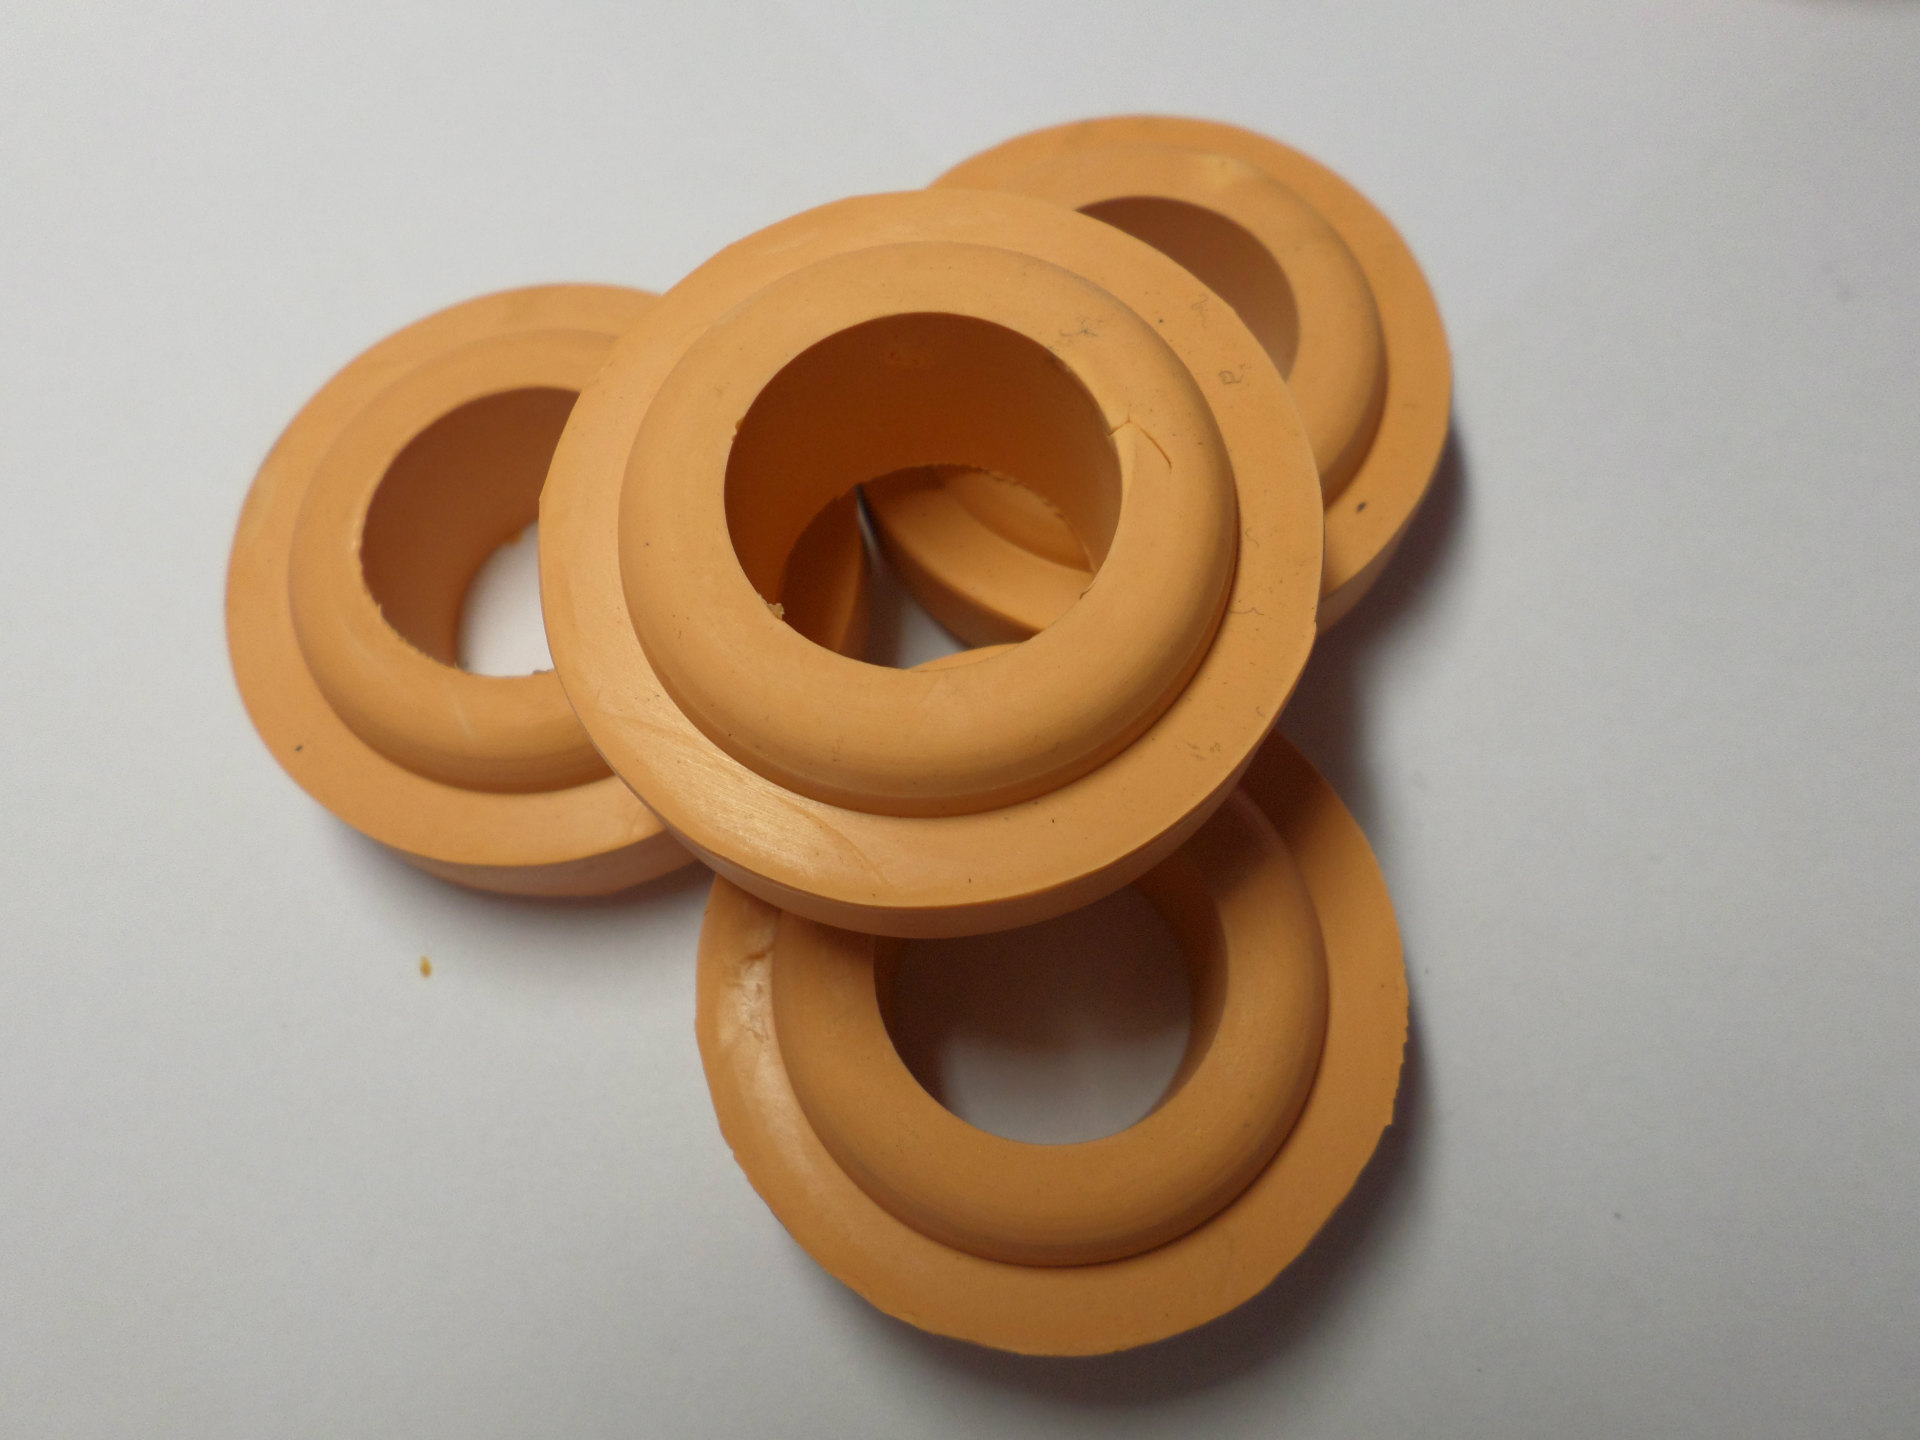 橡胶缓冲块 机器减震垫 机脚 工业橡胶制品 硅胶制品定制